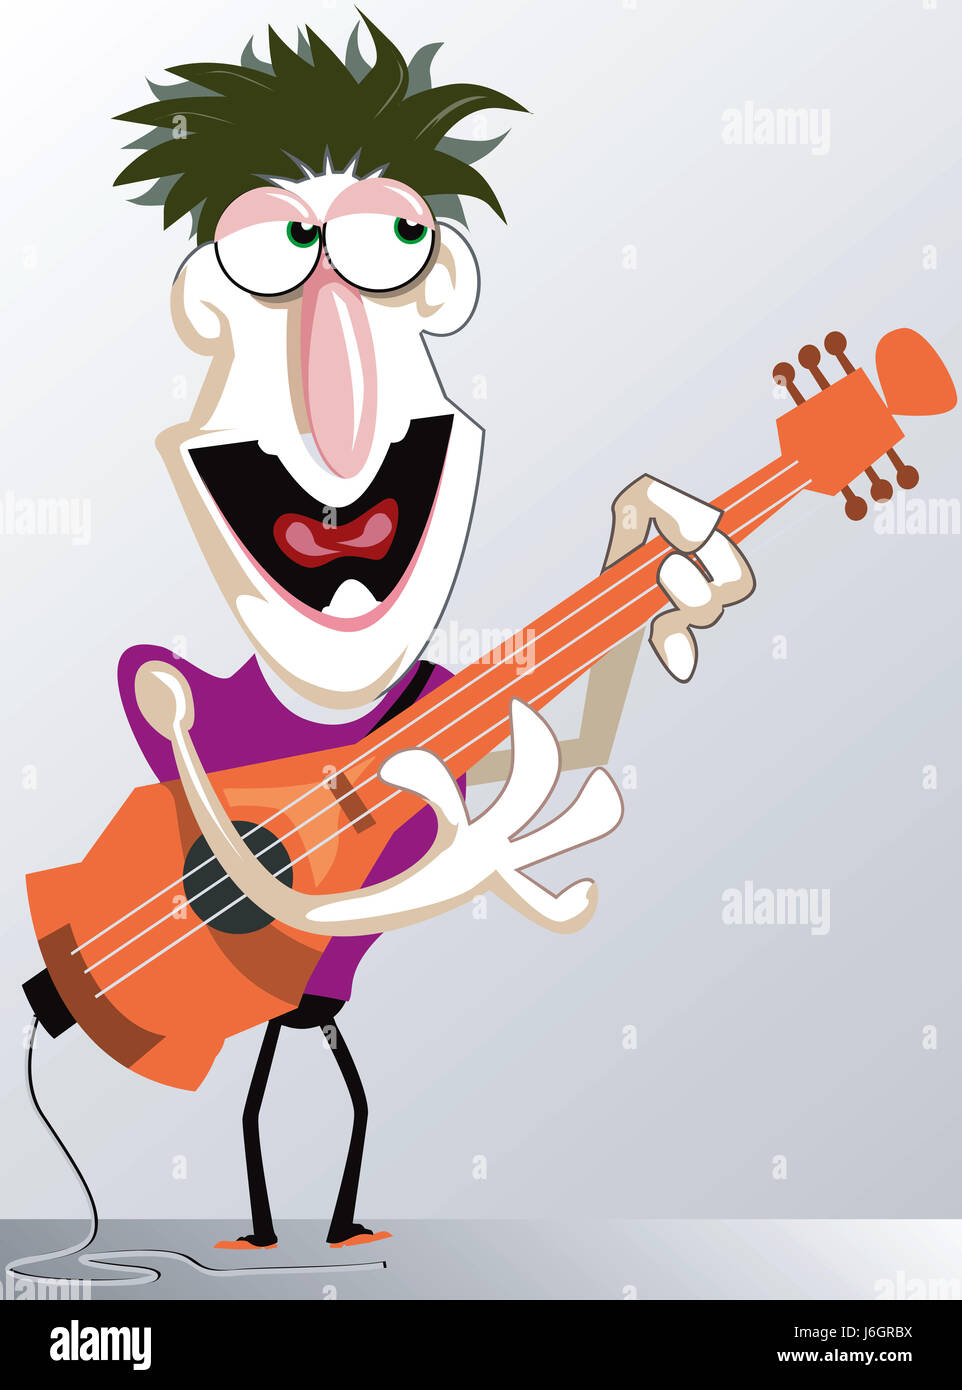 La musica di chitarra di colore cantante personaggio Giocatore uomo concerto comico umorismo graphic Foto Stock